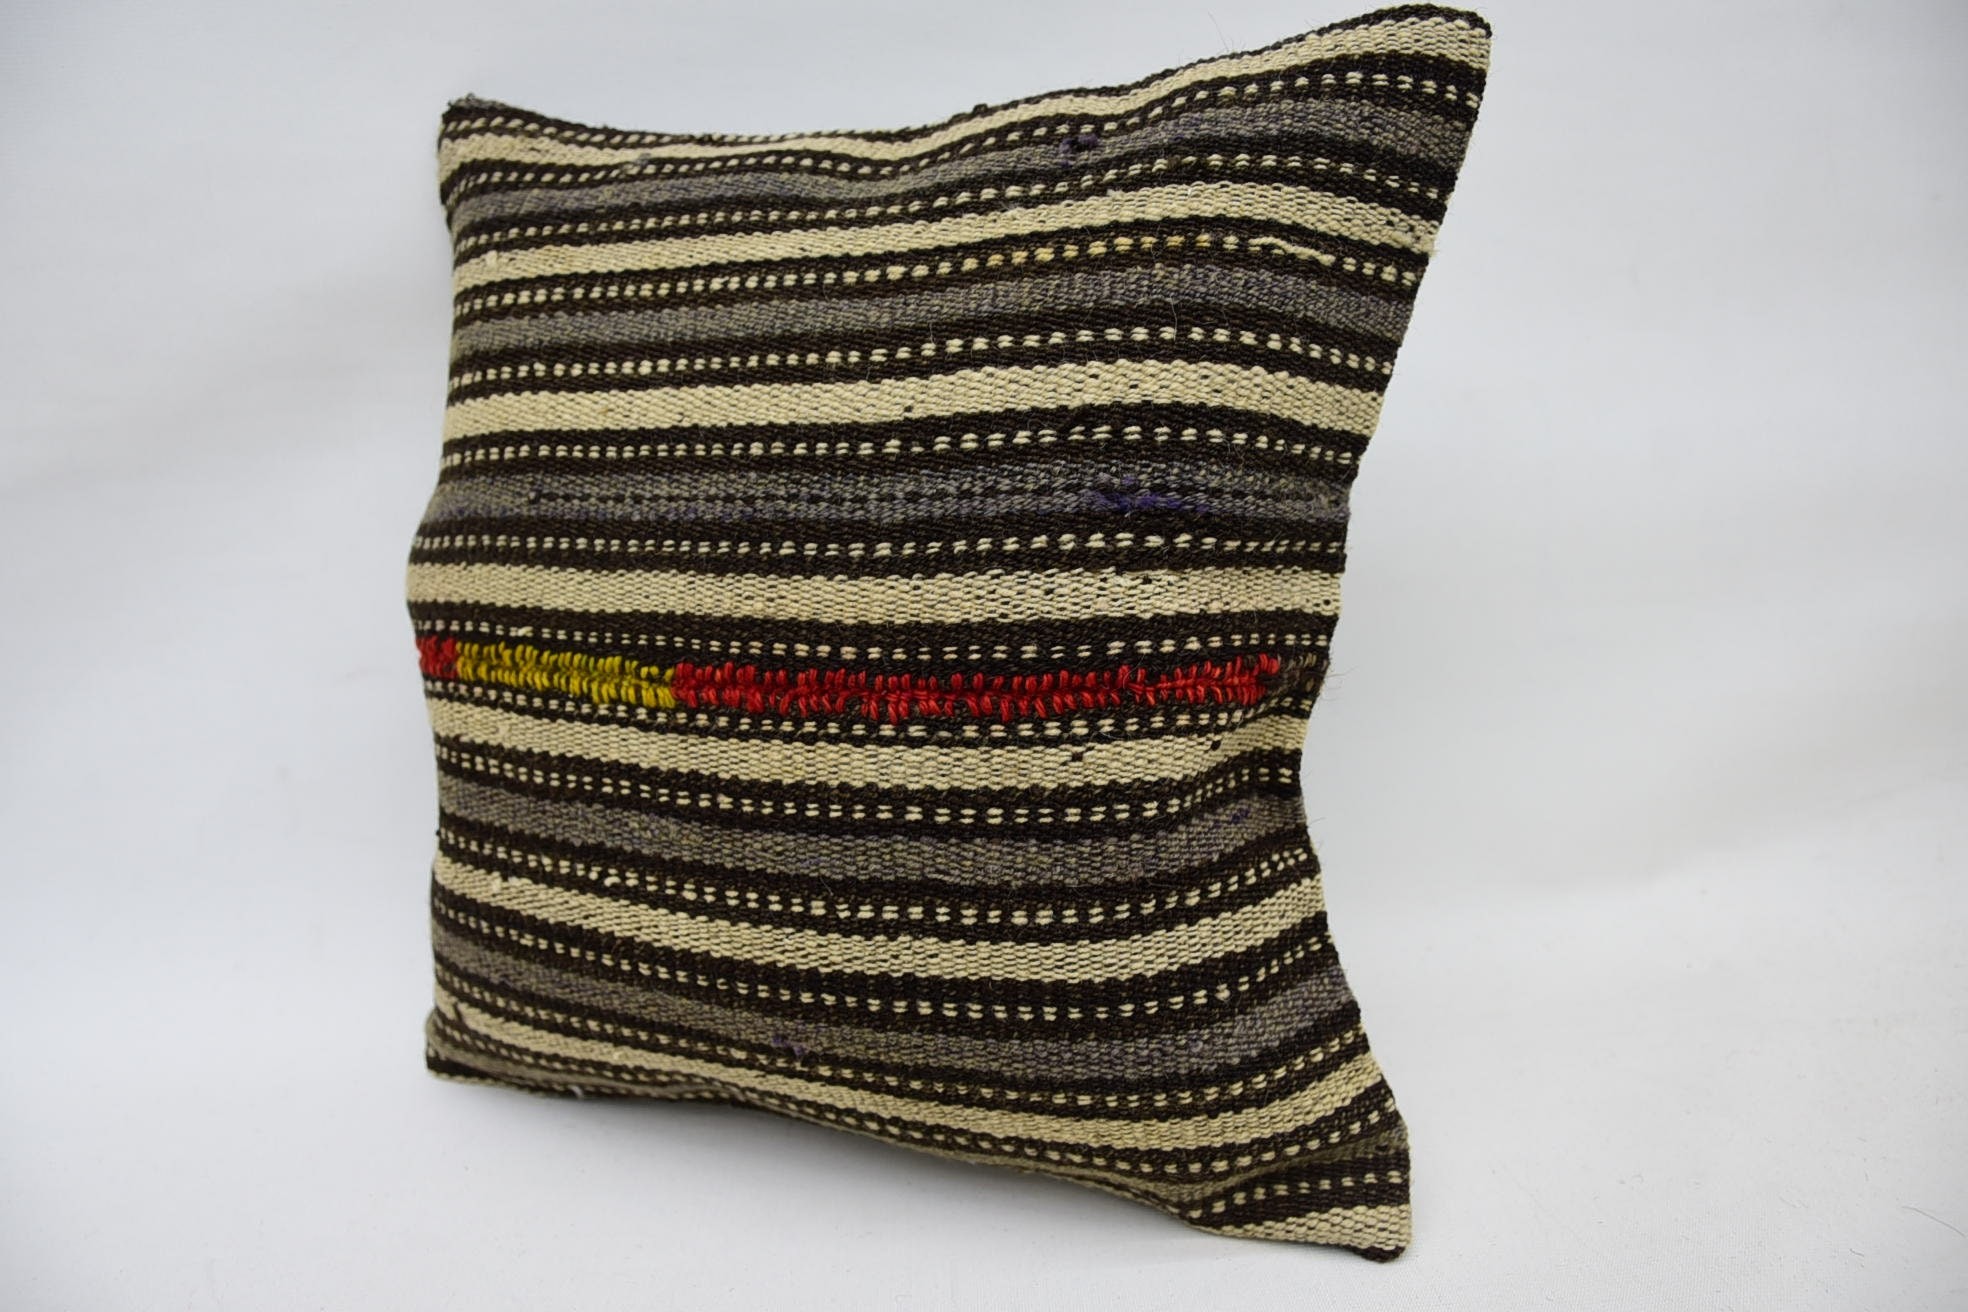 Turkish Pillow, Vintage Kilim Pillow, Custom Pillow, Farmhouse Pillow, Ethnical Kilim Rug Pillow, 14"x14" Beige Pillow Case